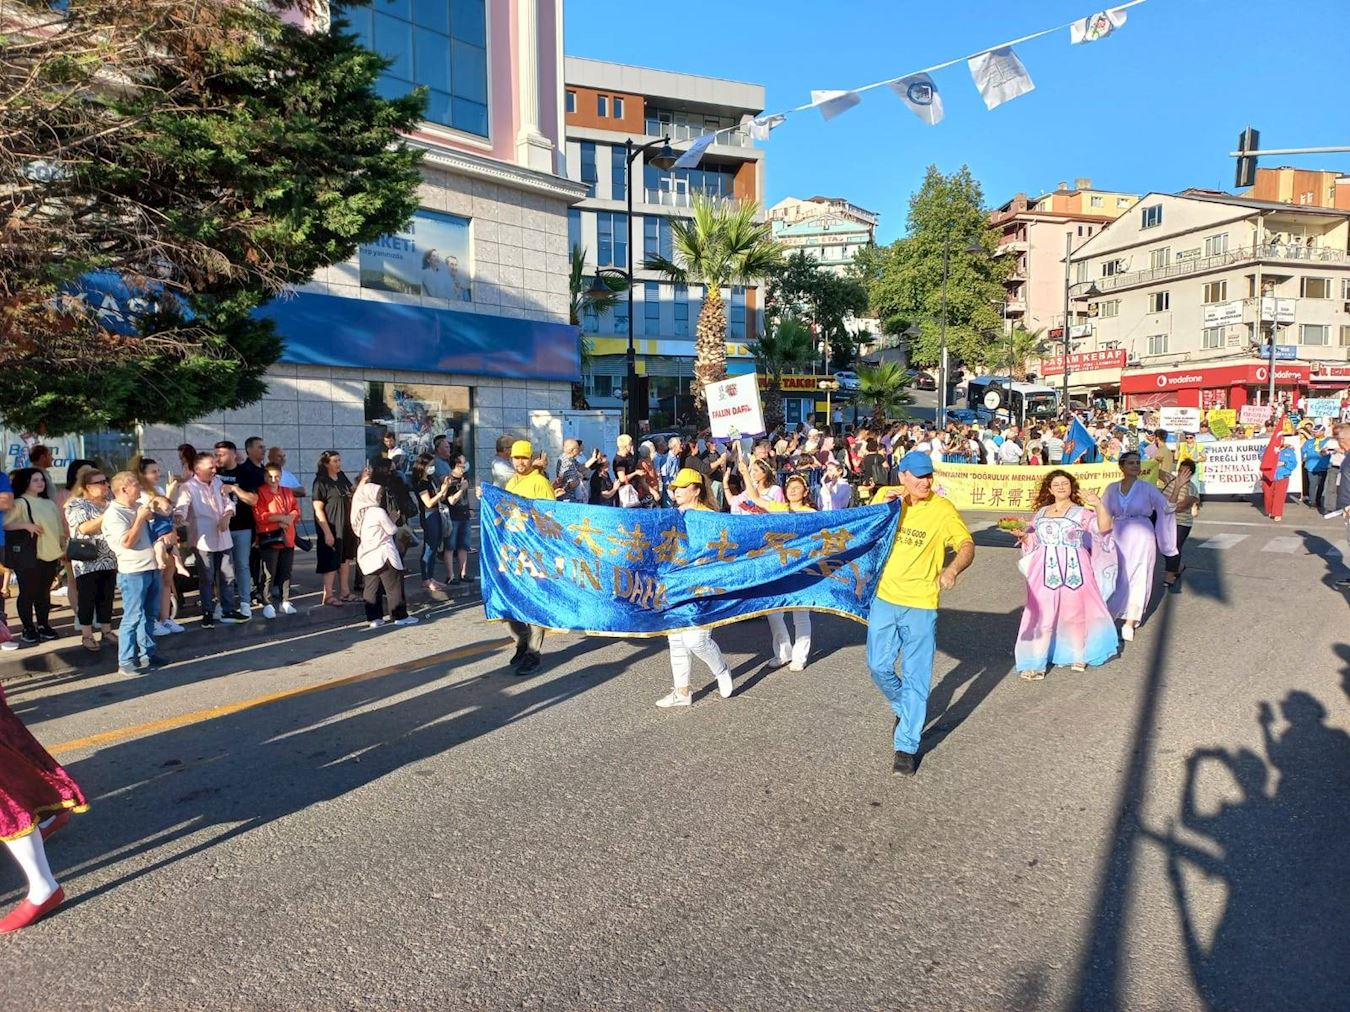 '圖2：七月二十一日，土耳其法輪功學員參加「愛、友誼與和平」國際文化藝術節的遊行，受到兩旁觀眾的歡迎，他們有的跟學員招手，有的鼓掌喝彩。'